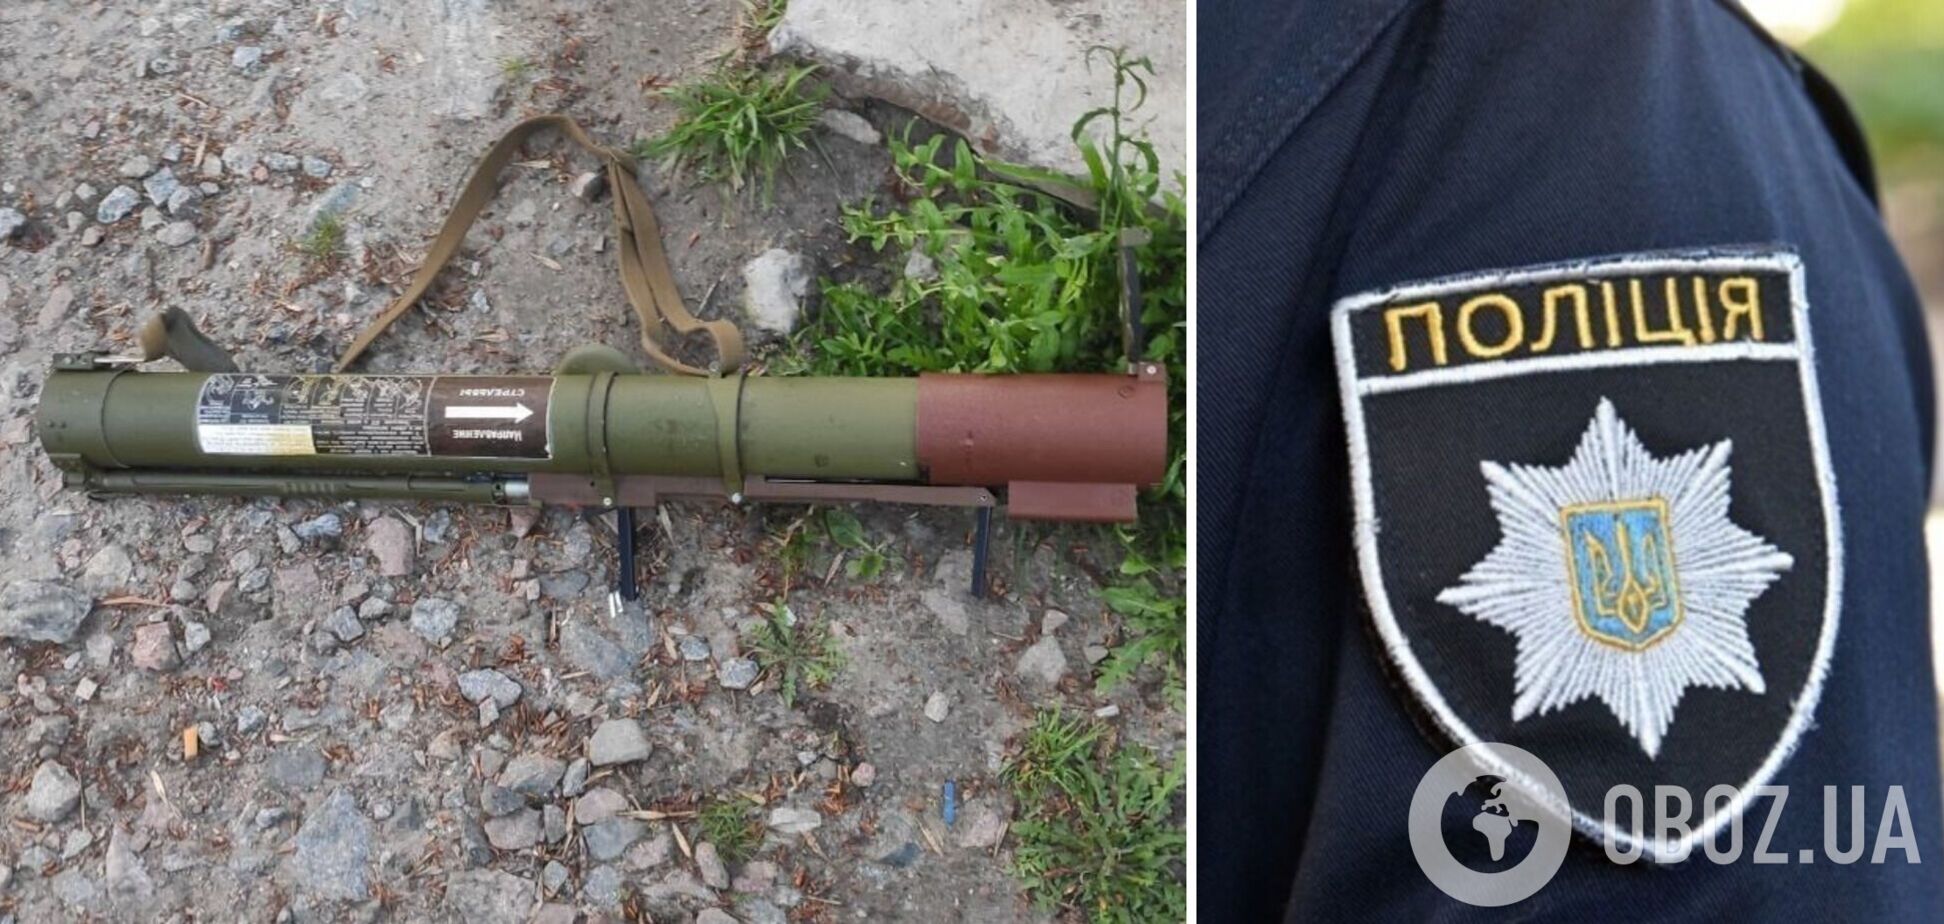 В Полтаве на улице обнаружили гранатомет: ранее жители города сообщали о звуках, похожих на взрыв. Фото